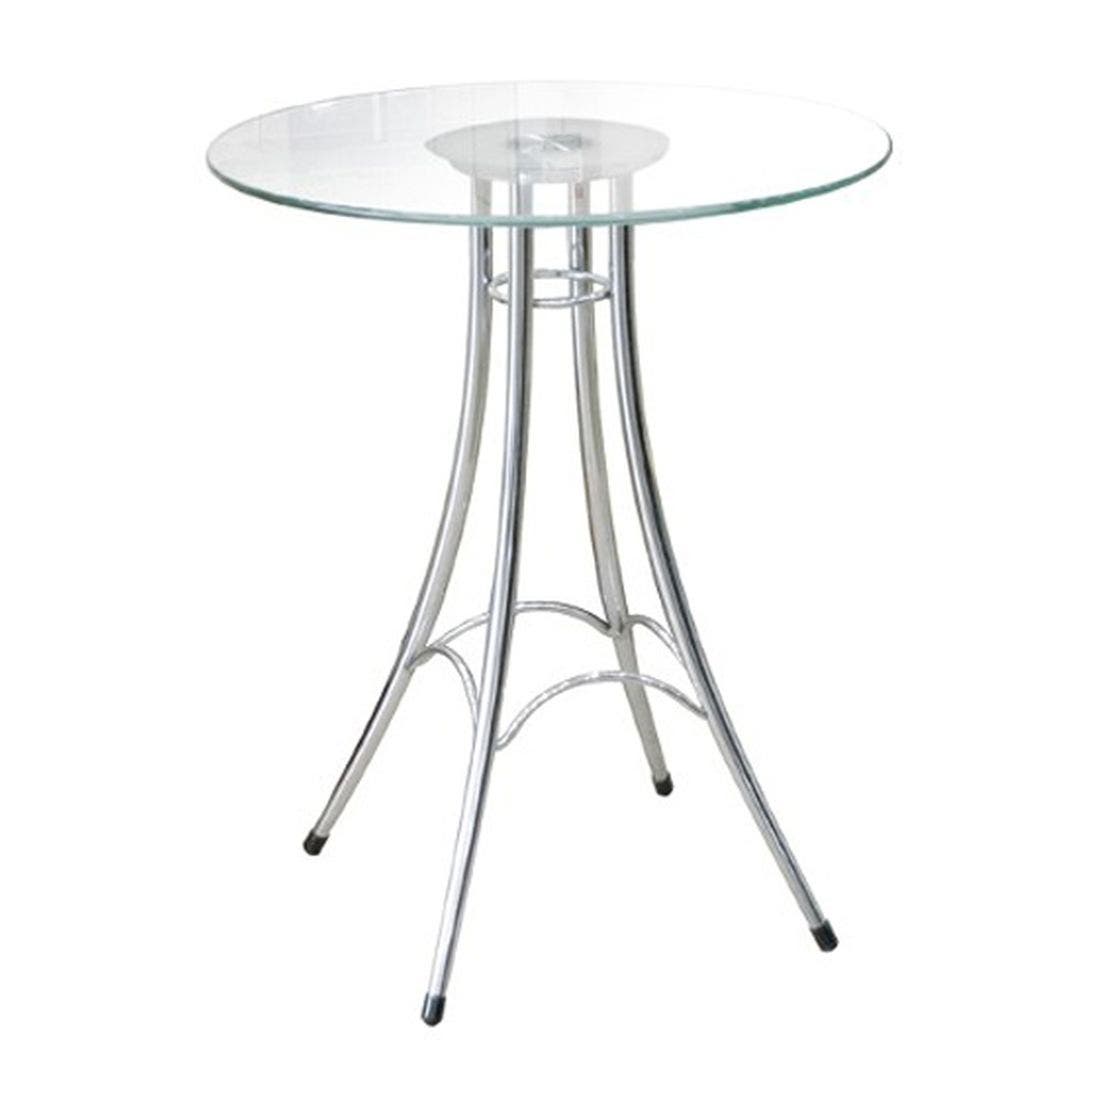 โต๊ะทานอาหาร โต๊ะอาหารขาเหล็กท๊อปกระจก รุ่น Ieffel-SB Design Square